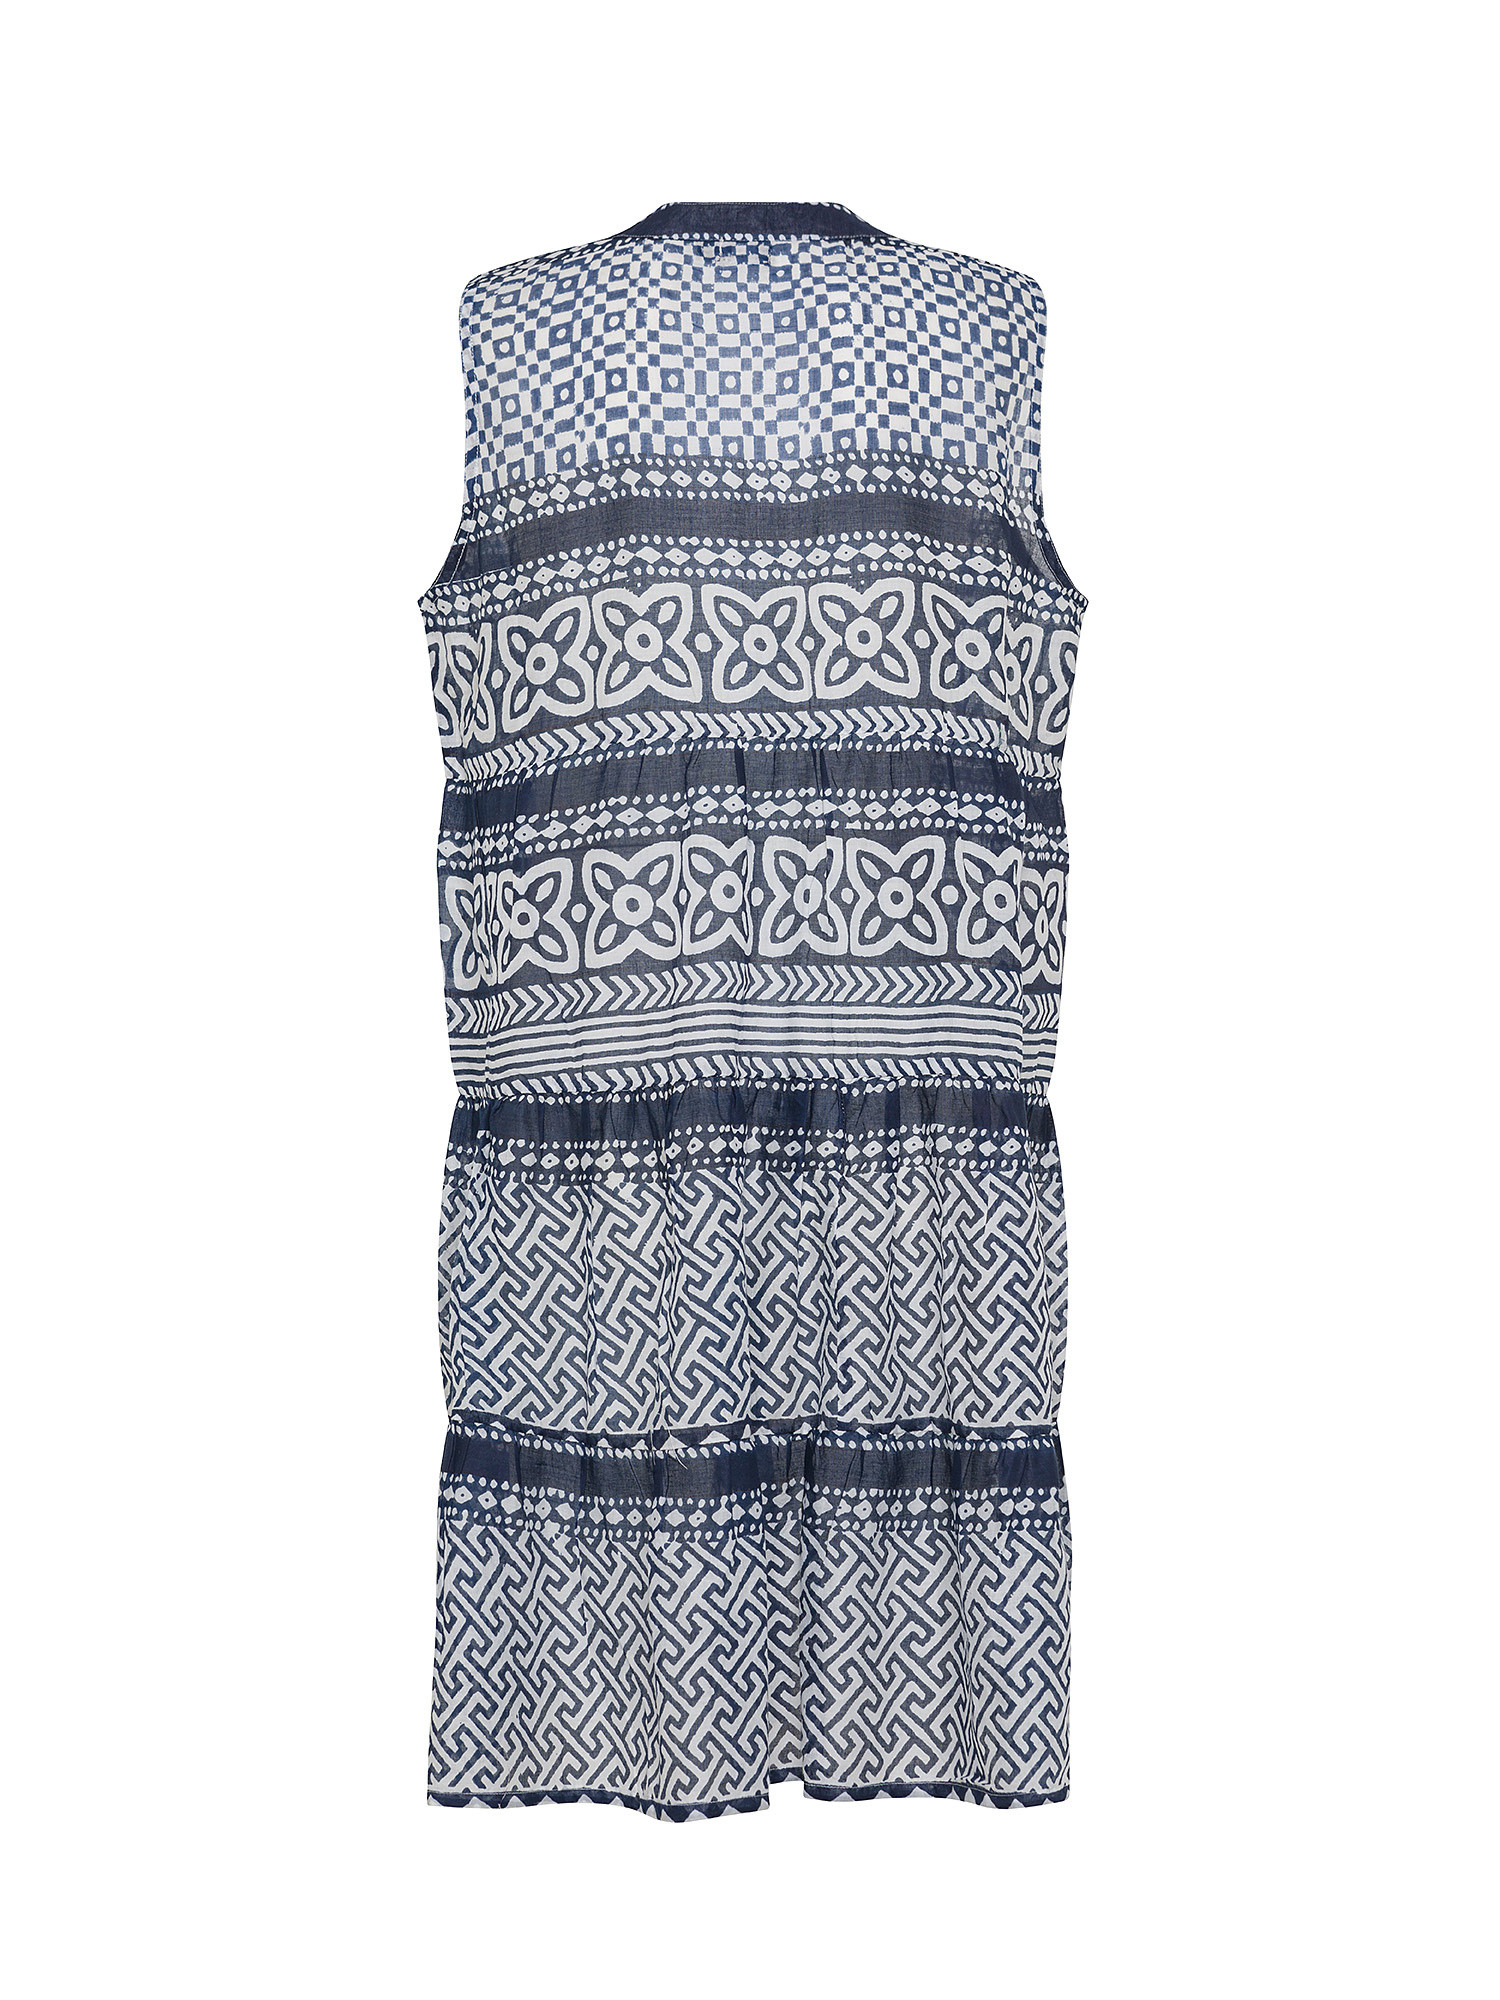 Koan - Patterned cotton dress, Dark Blue, large image number 1